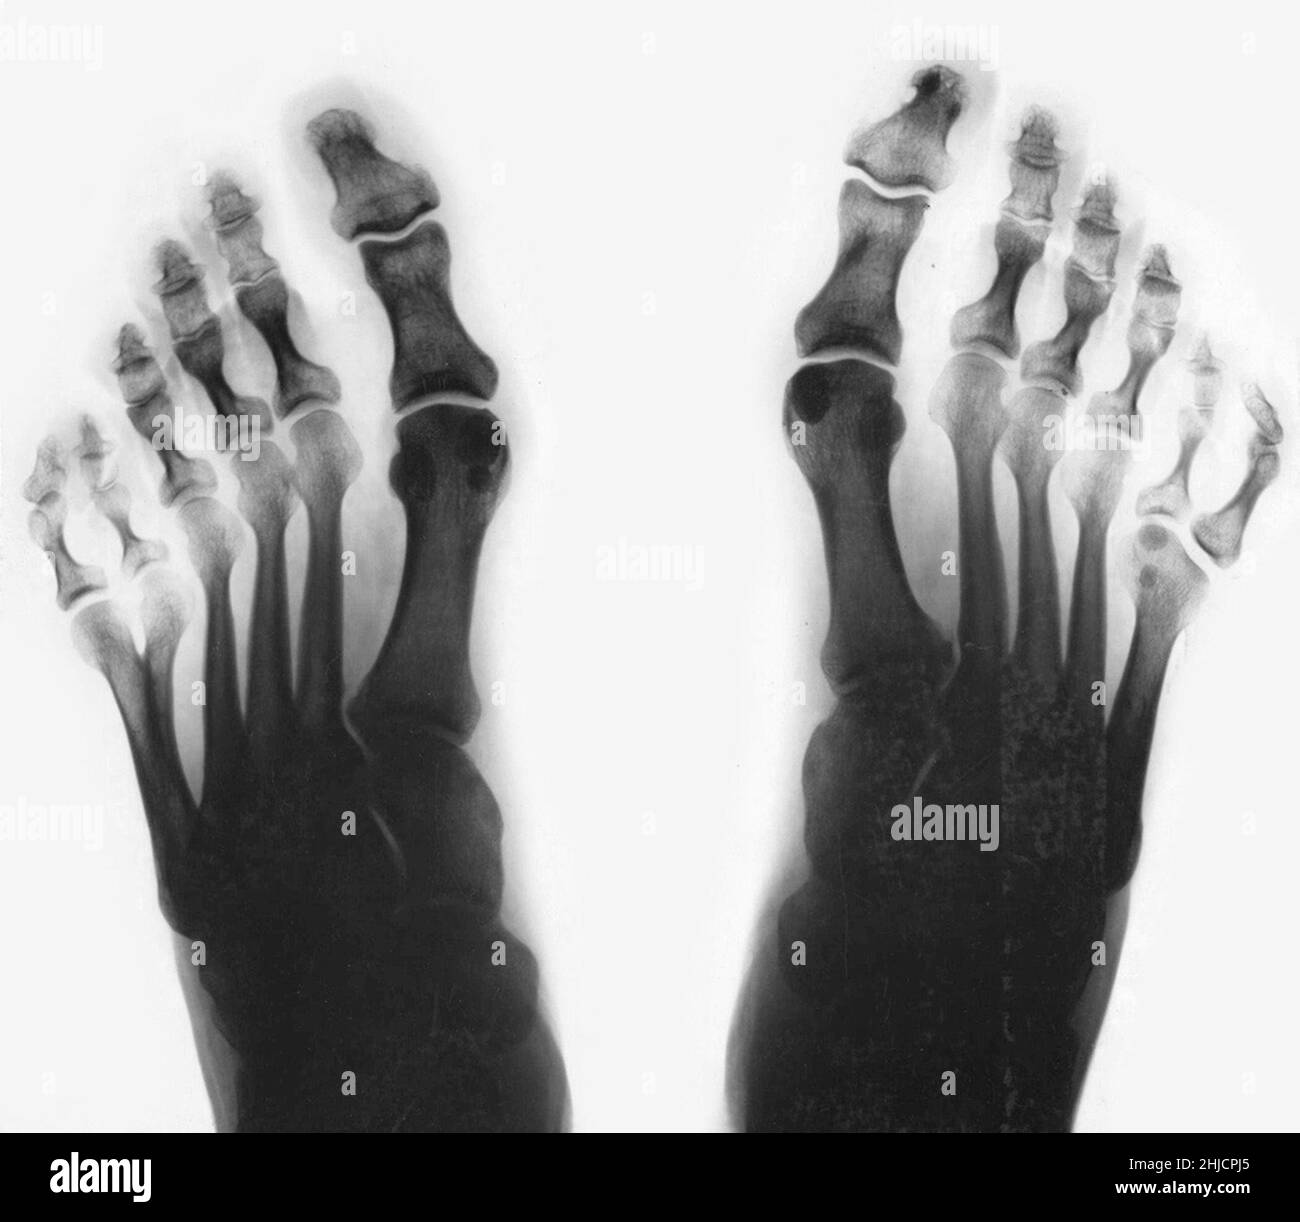 Röntgenaufnahme der Füße, zeigt postaxiale Polydaktylen. Polydaktylismus ist die angeborene Anomalie der mit fremden Fingern oder Zehen. Wie oben sichtbar, hatte diese Person sechs Zehen an beiden Füßen. Dies ist ein Beispiel für postaxiale Polydaktylen, weil die zusätzliche Ziffer auf der rosa Seite des Fußes auftritt. Stockfoto